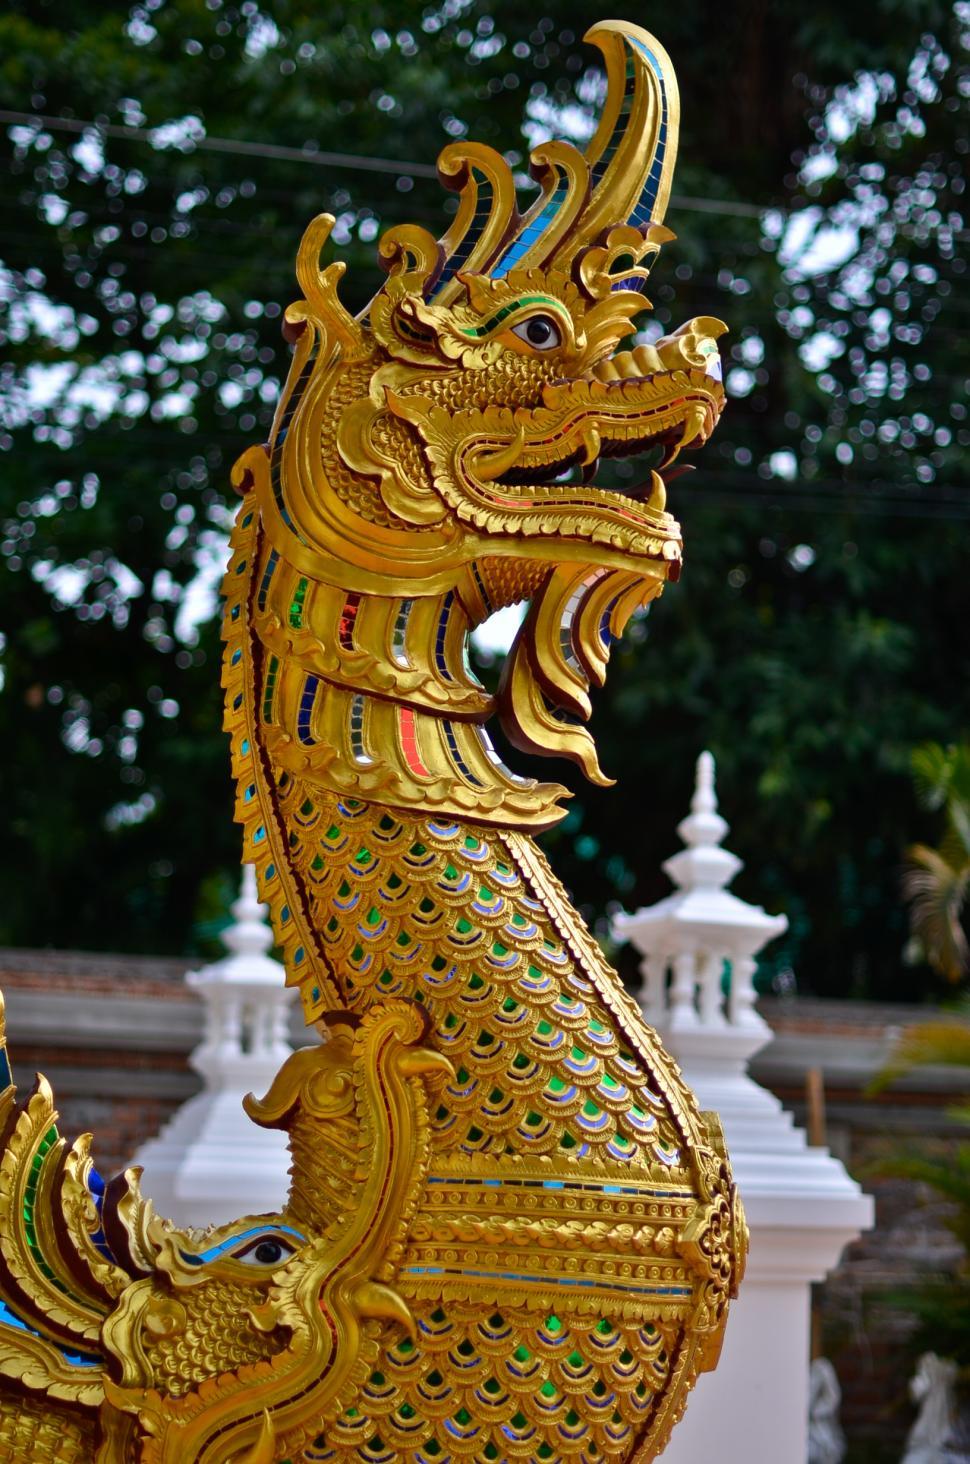 Free Image of Thai Dragon Head 